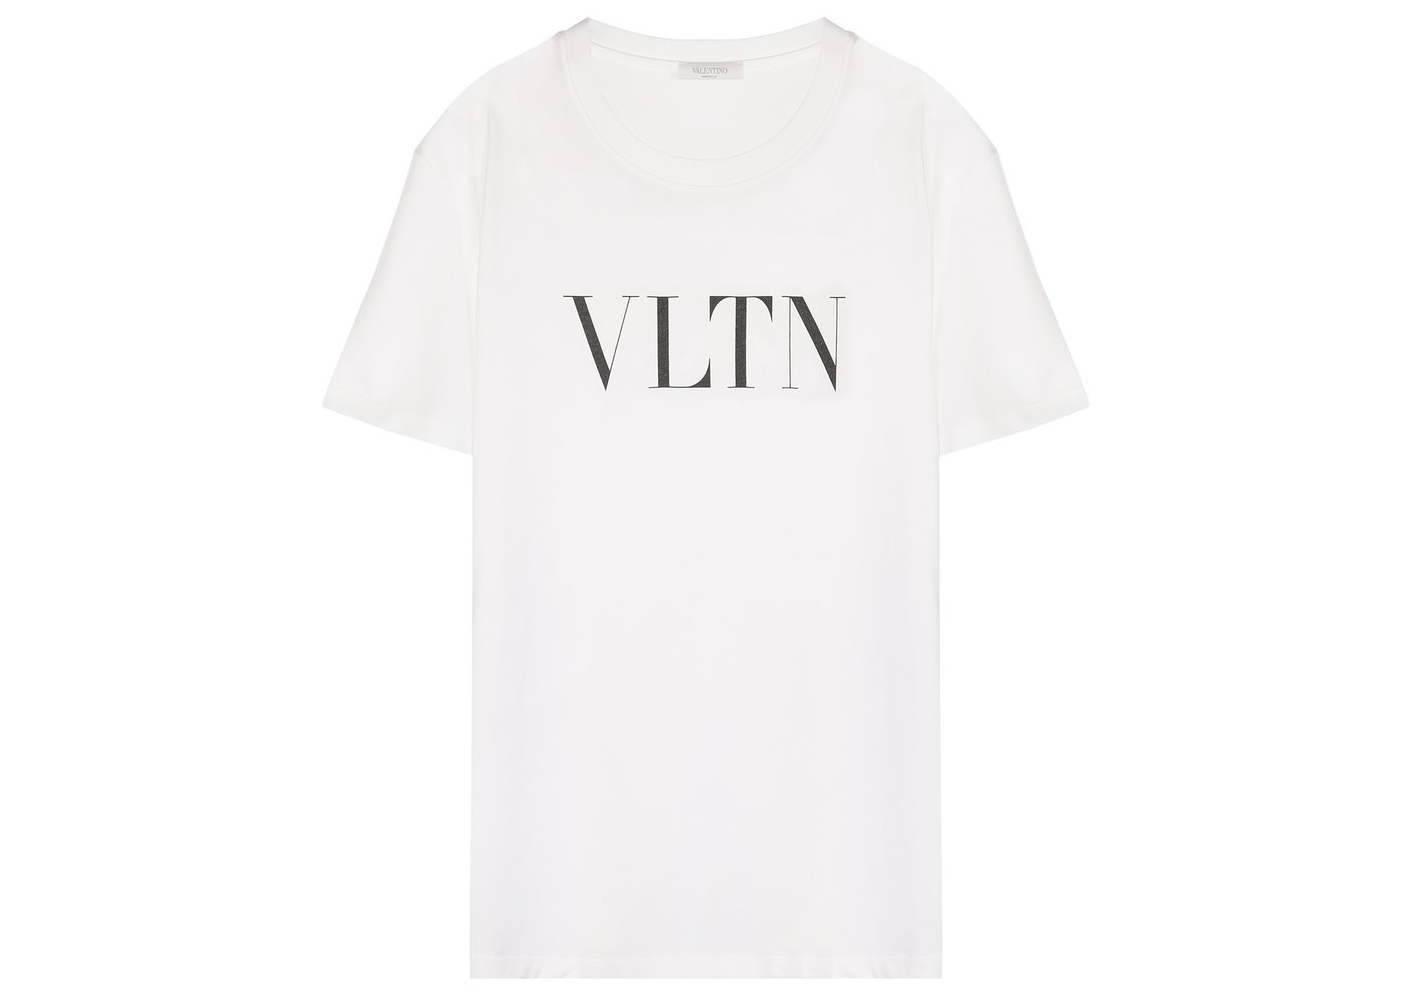 Valentino VLTN Print T-shirt White/Black